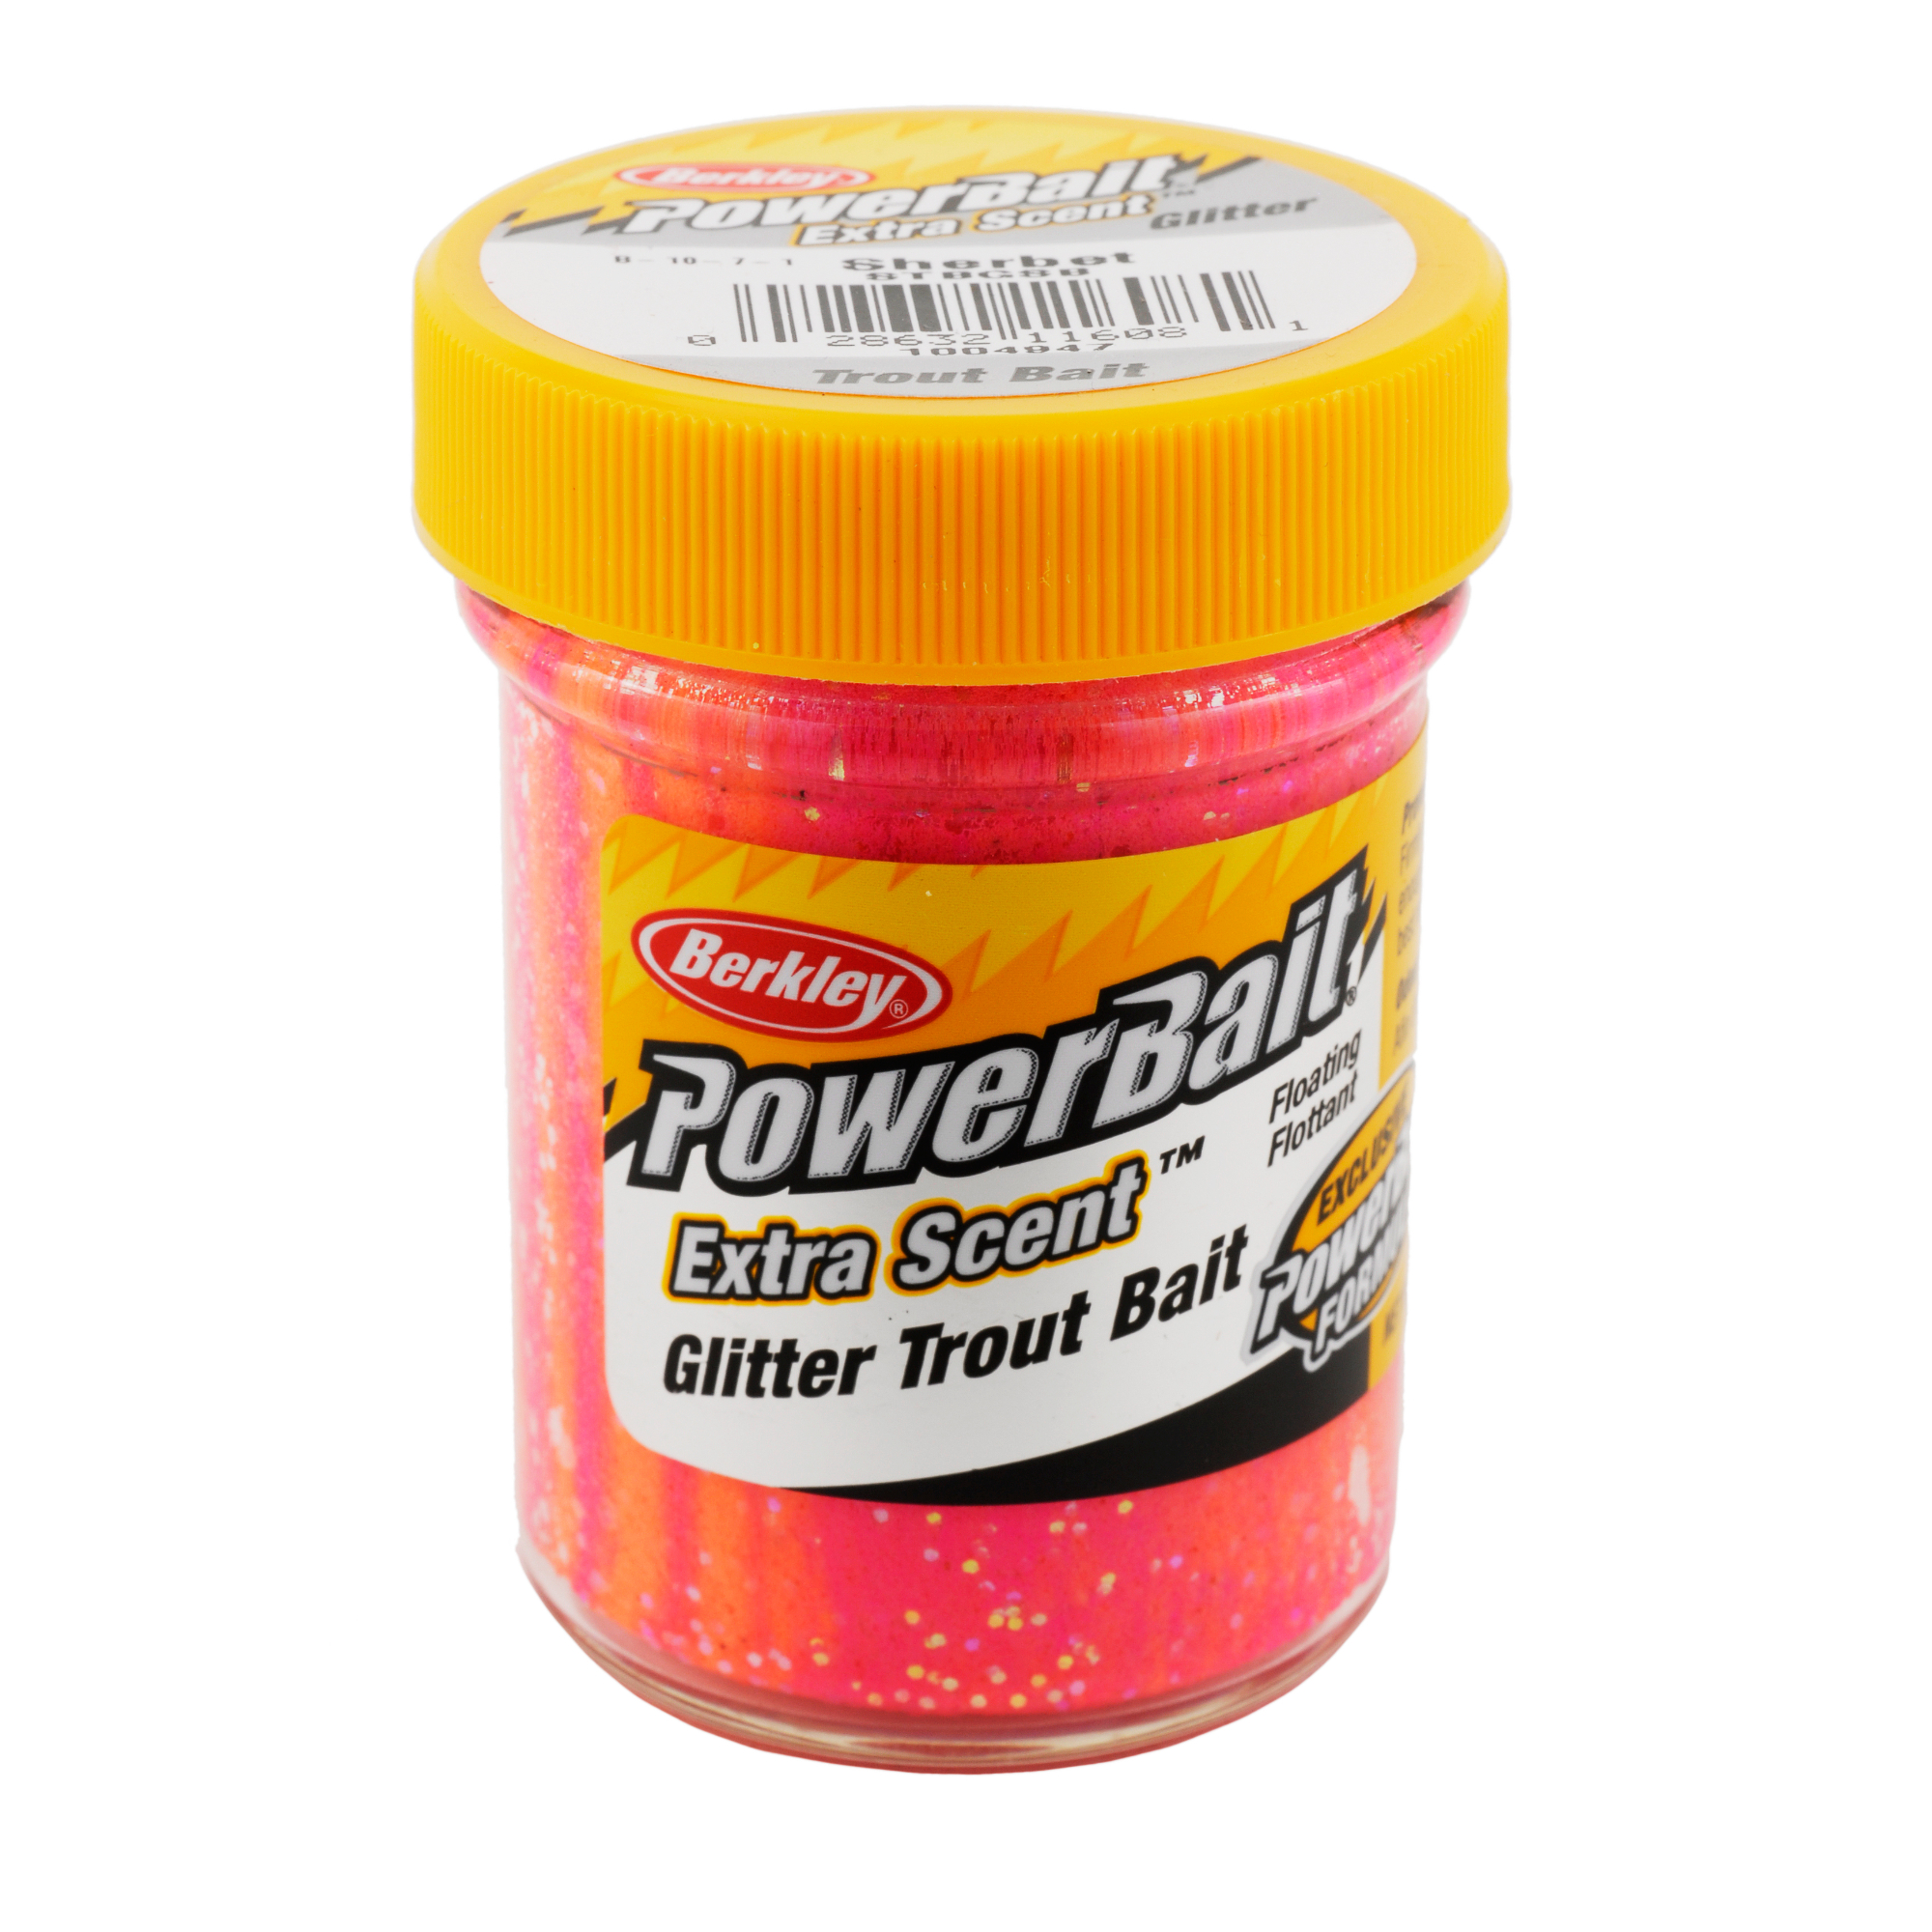 Berkley PowerBait Glitter Trout Bait - Sherbet (1.8 oz. Jar